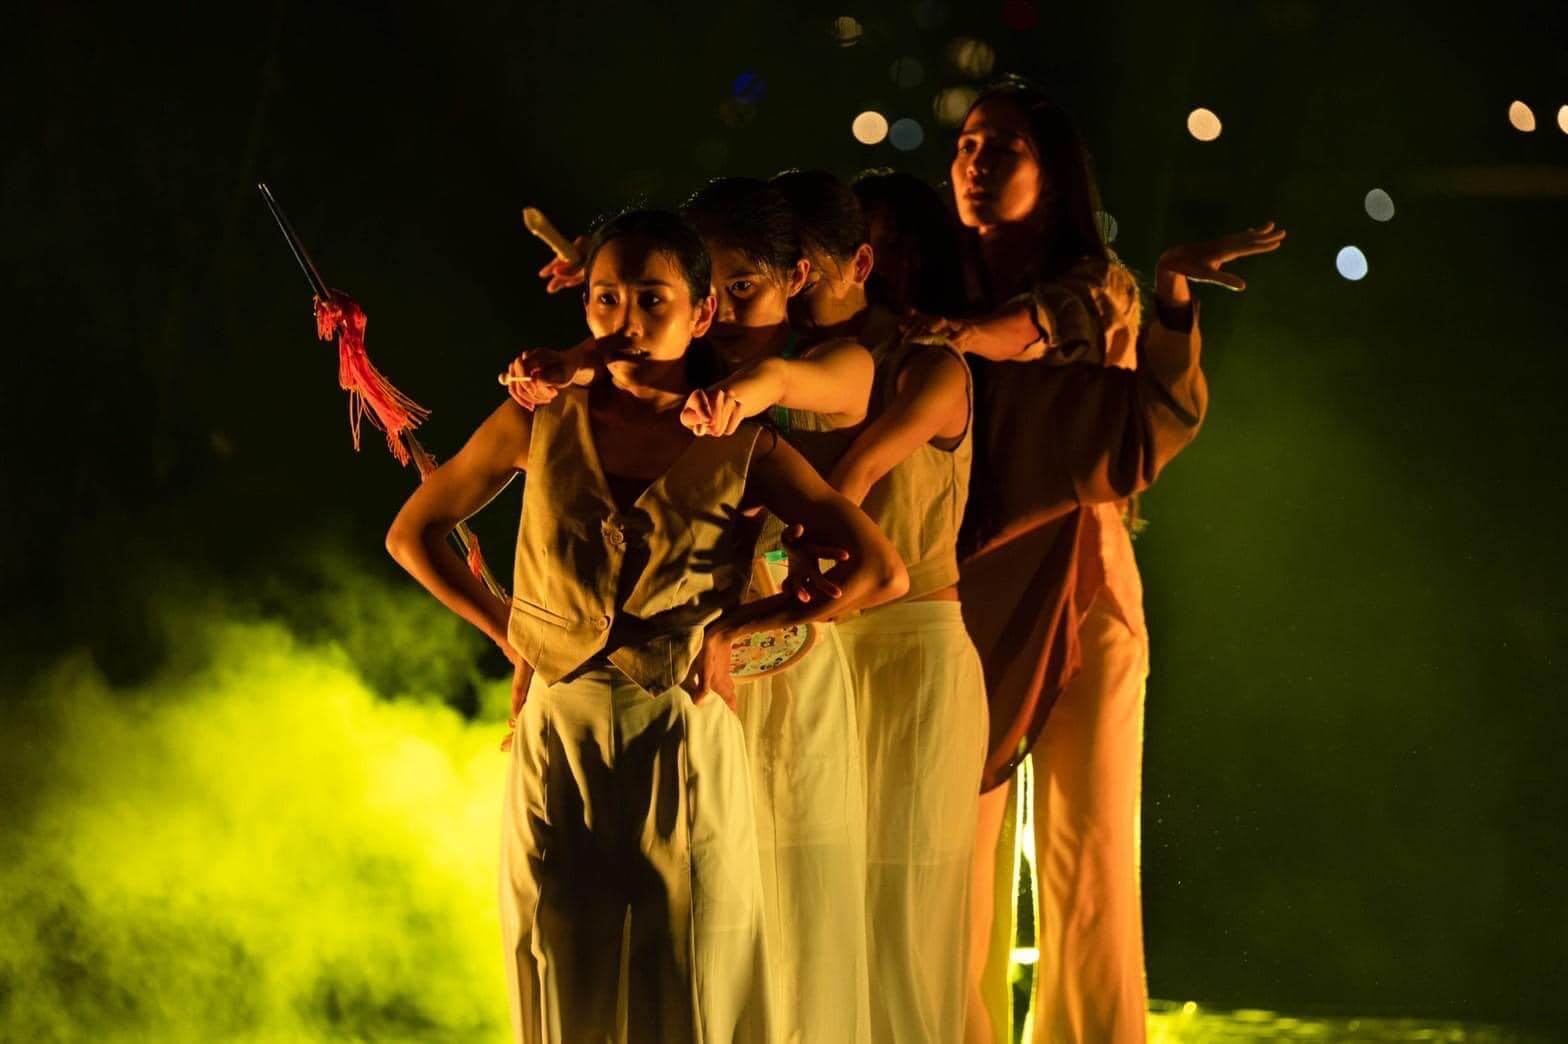 闖劇場《 裝神 Chuang Shen 》，演出中將結合舞蹈、音樂和視覺效果，表現出能量的流動和轉化，讓觀眾身心得以淨化和放鬆。照片由C-LAB提供